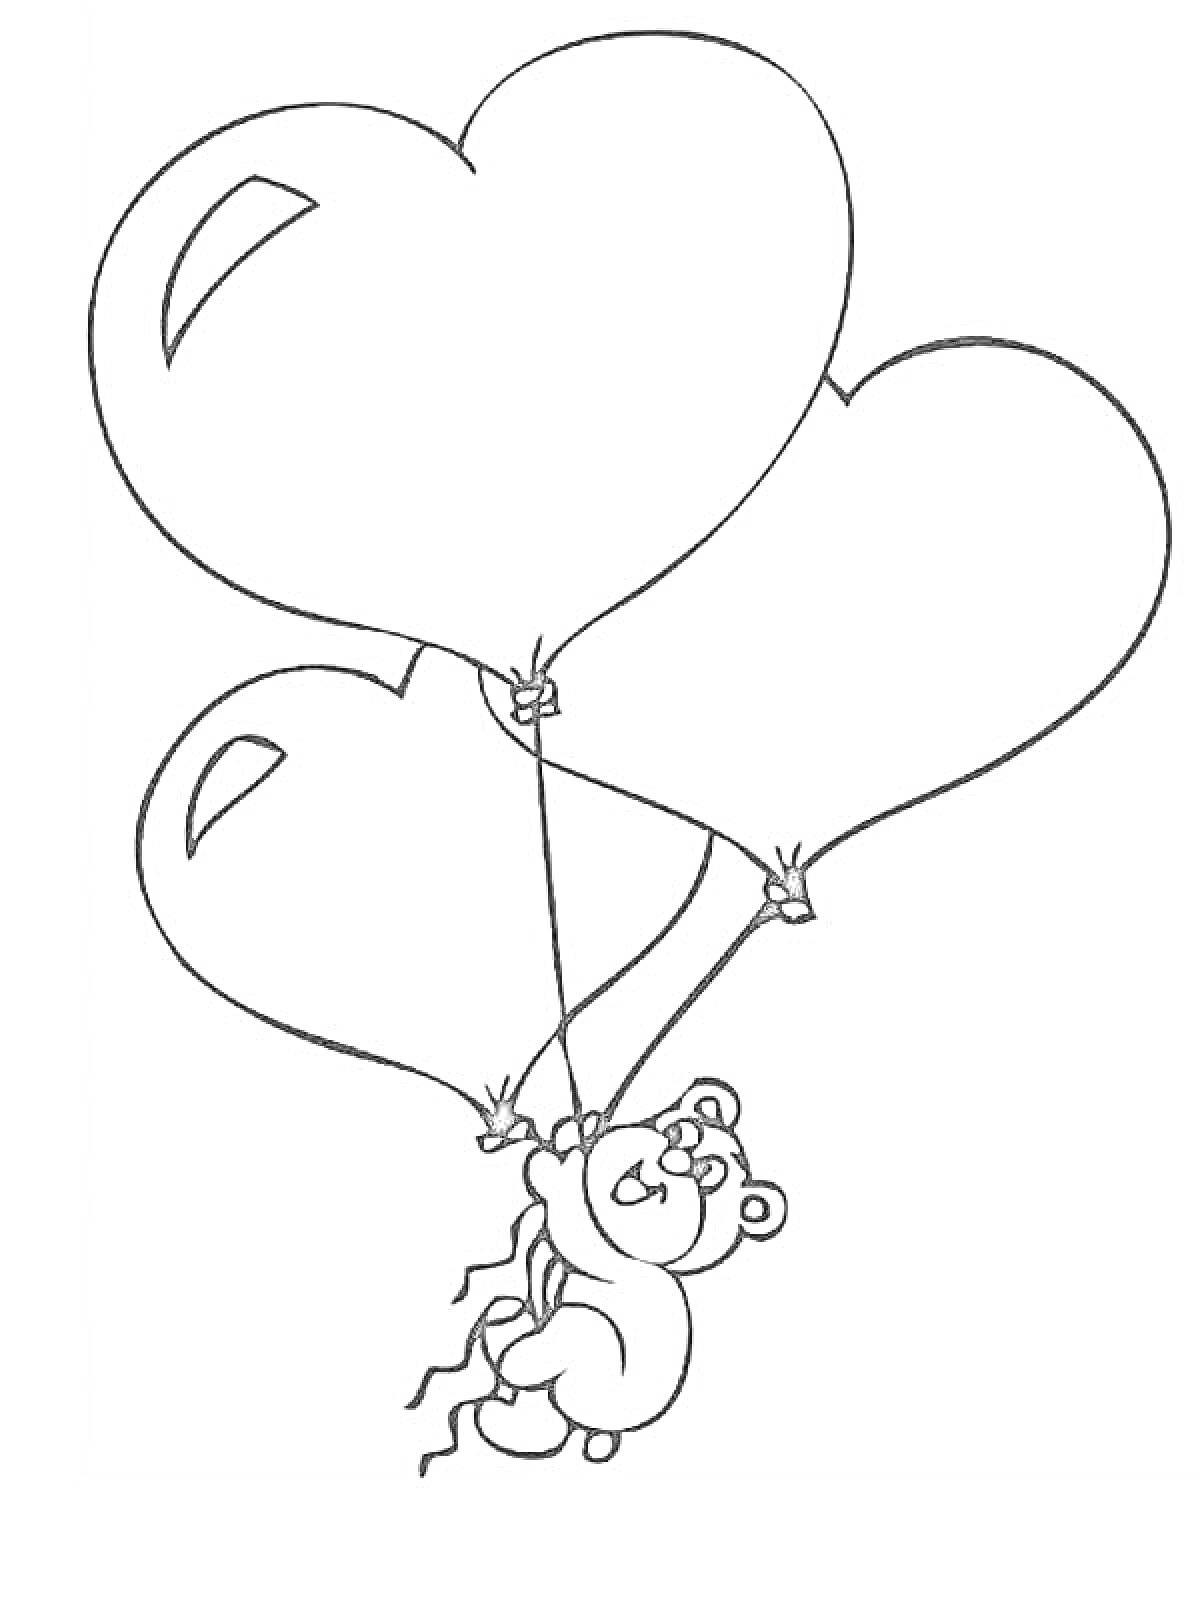 Раскраска Мишка с тремя воздушными шариками в форме сердца